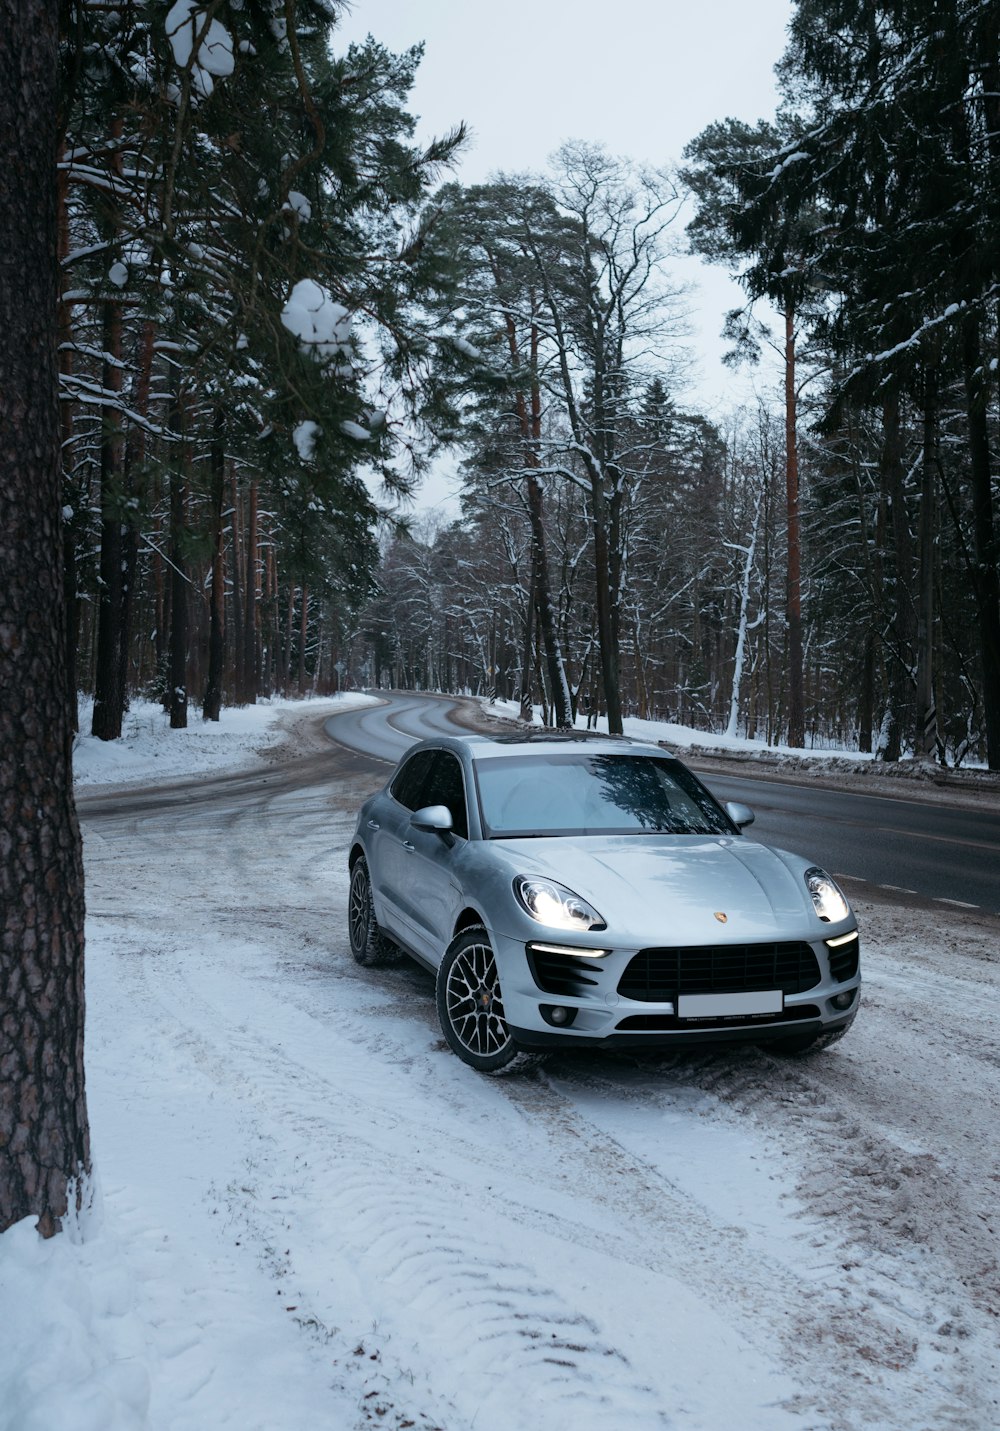 Un'auto sportiva argentata che guida lungo una strada coperta di neve